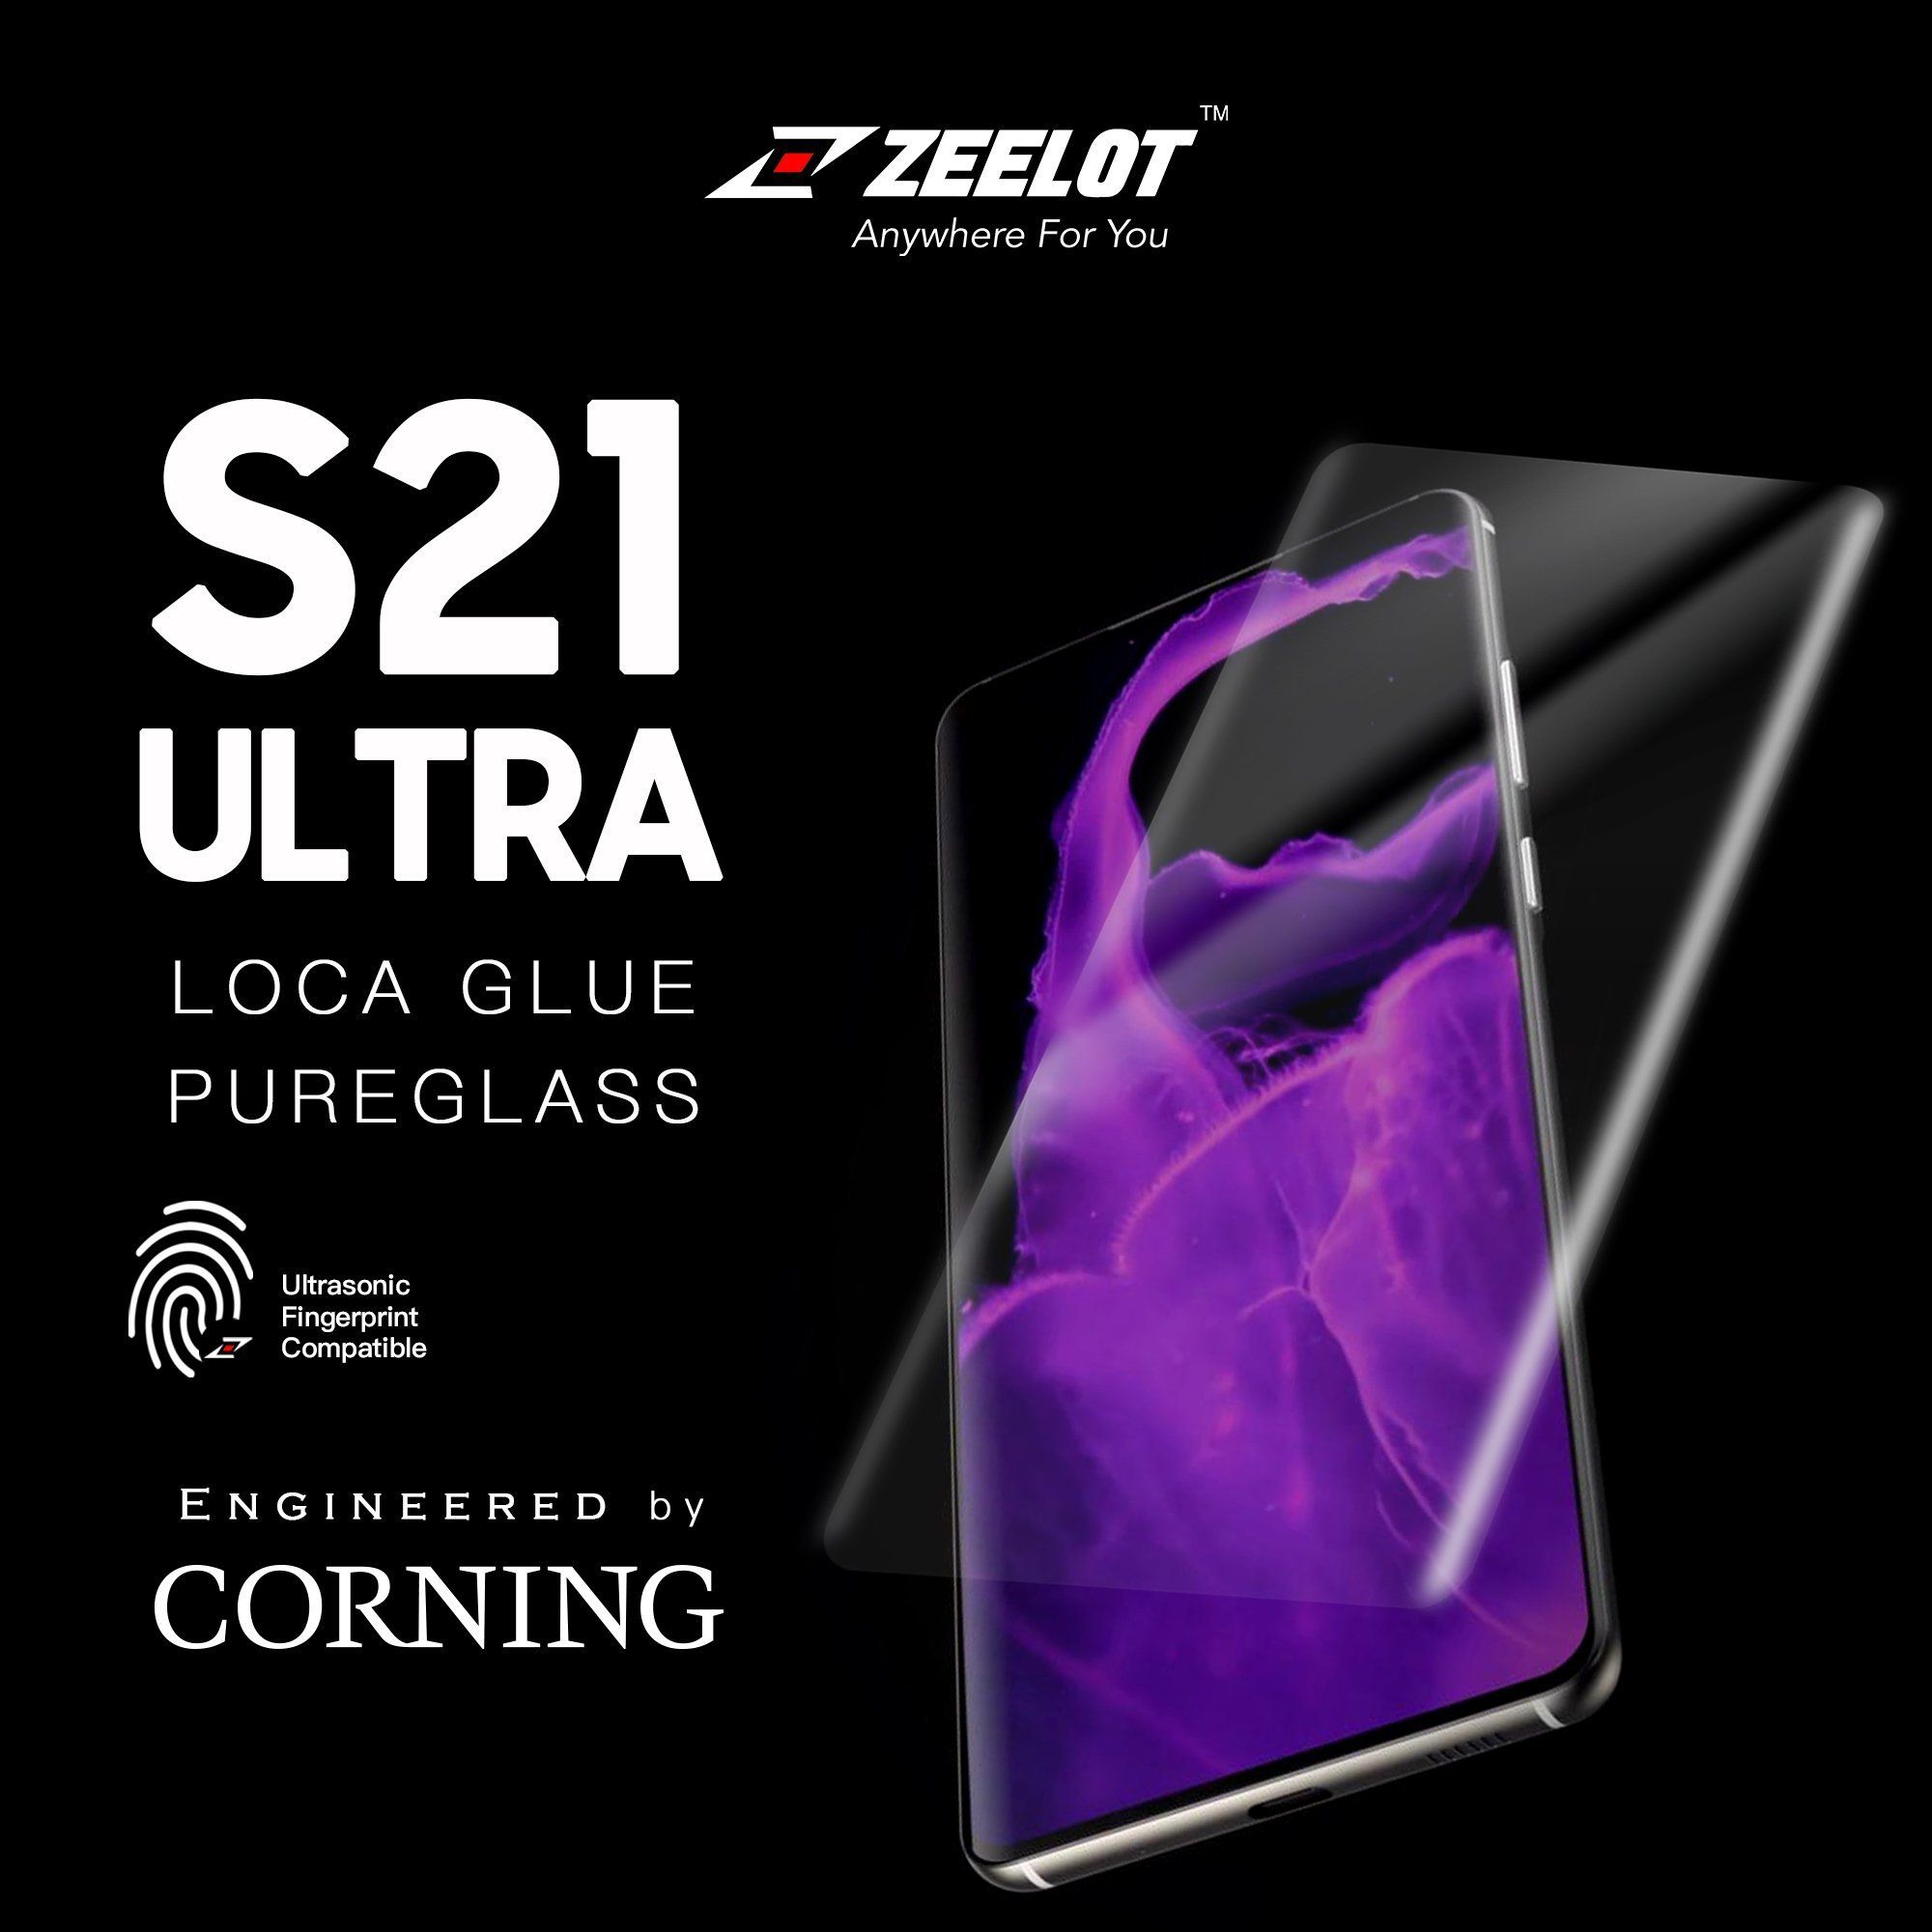 ZEELOT PureGlass 3D LOCA Tempered Glass Screen Protector for Samsung Galaxy S21 Ultra, Clear S21 ZEELOT 